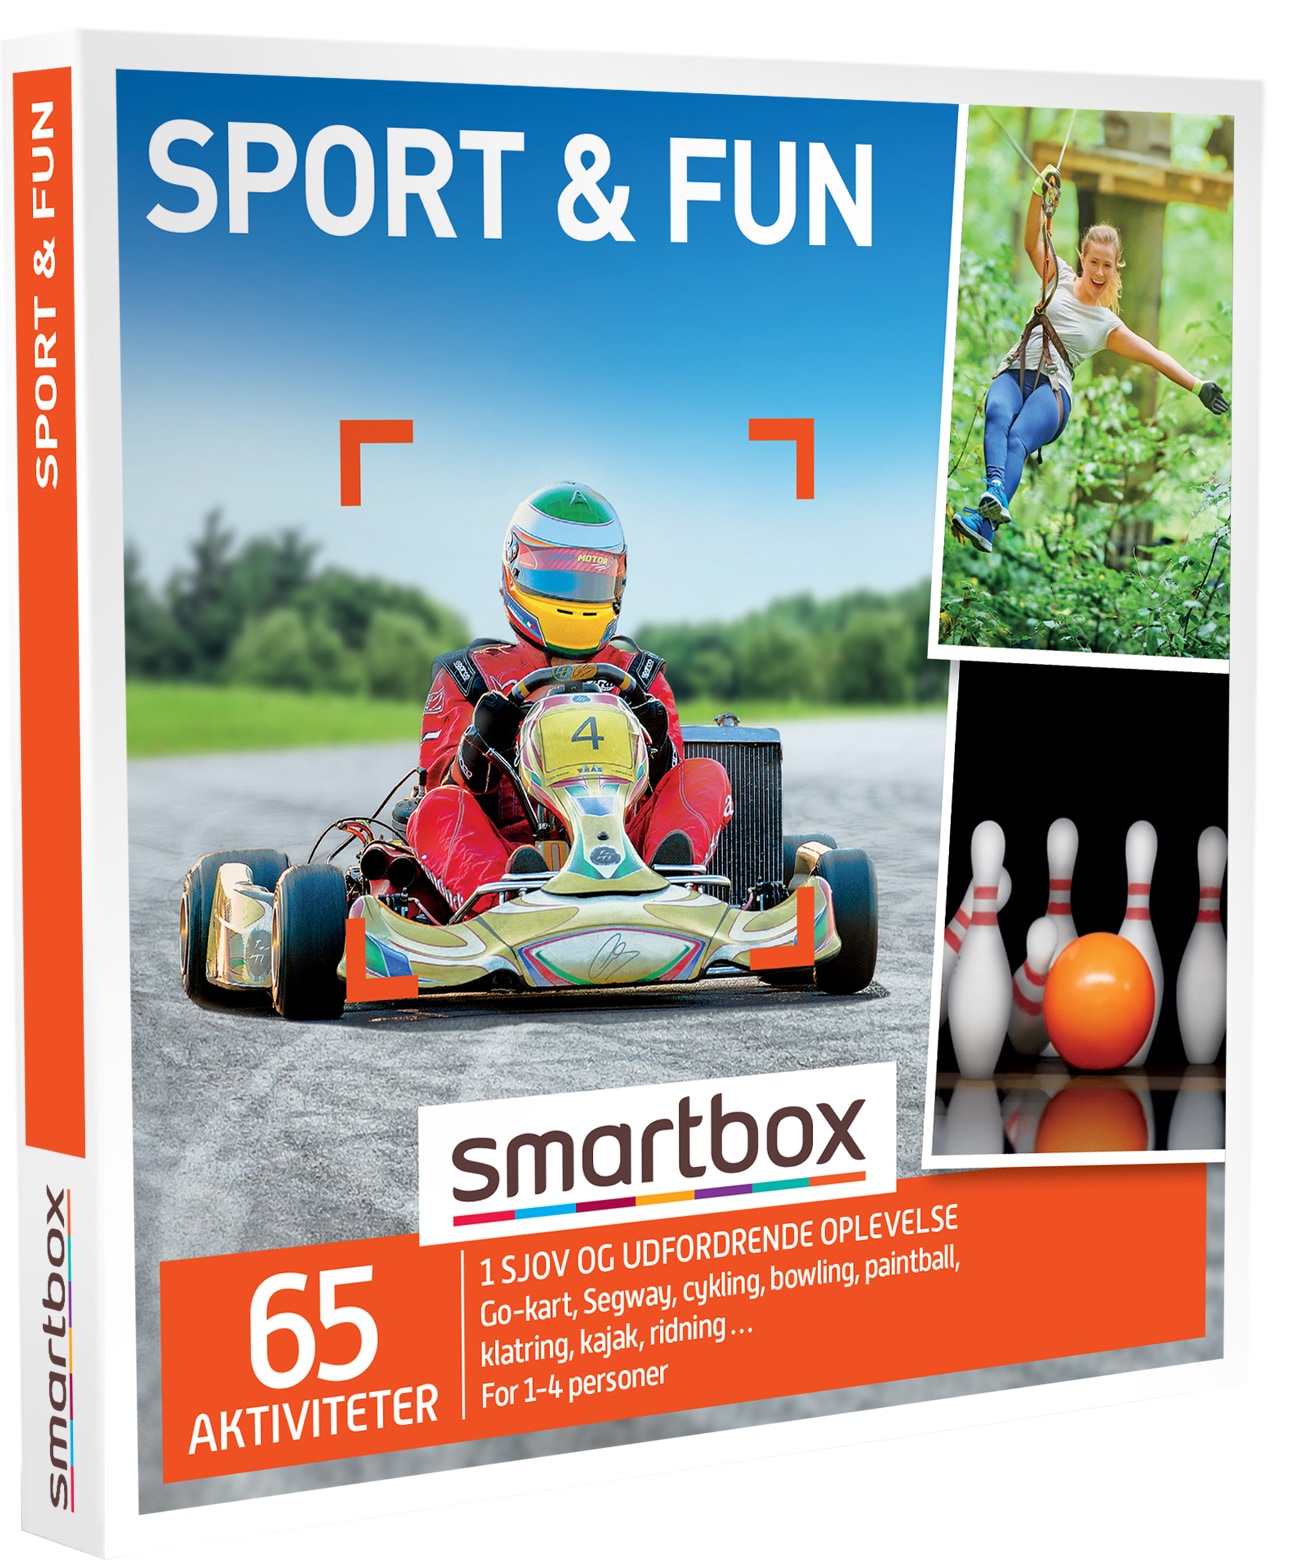 Smartbox gavekort - Sport & fun | Elgiganten